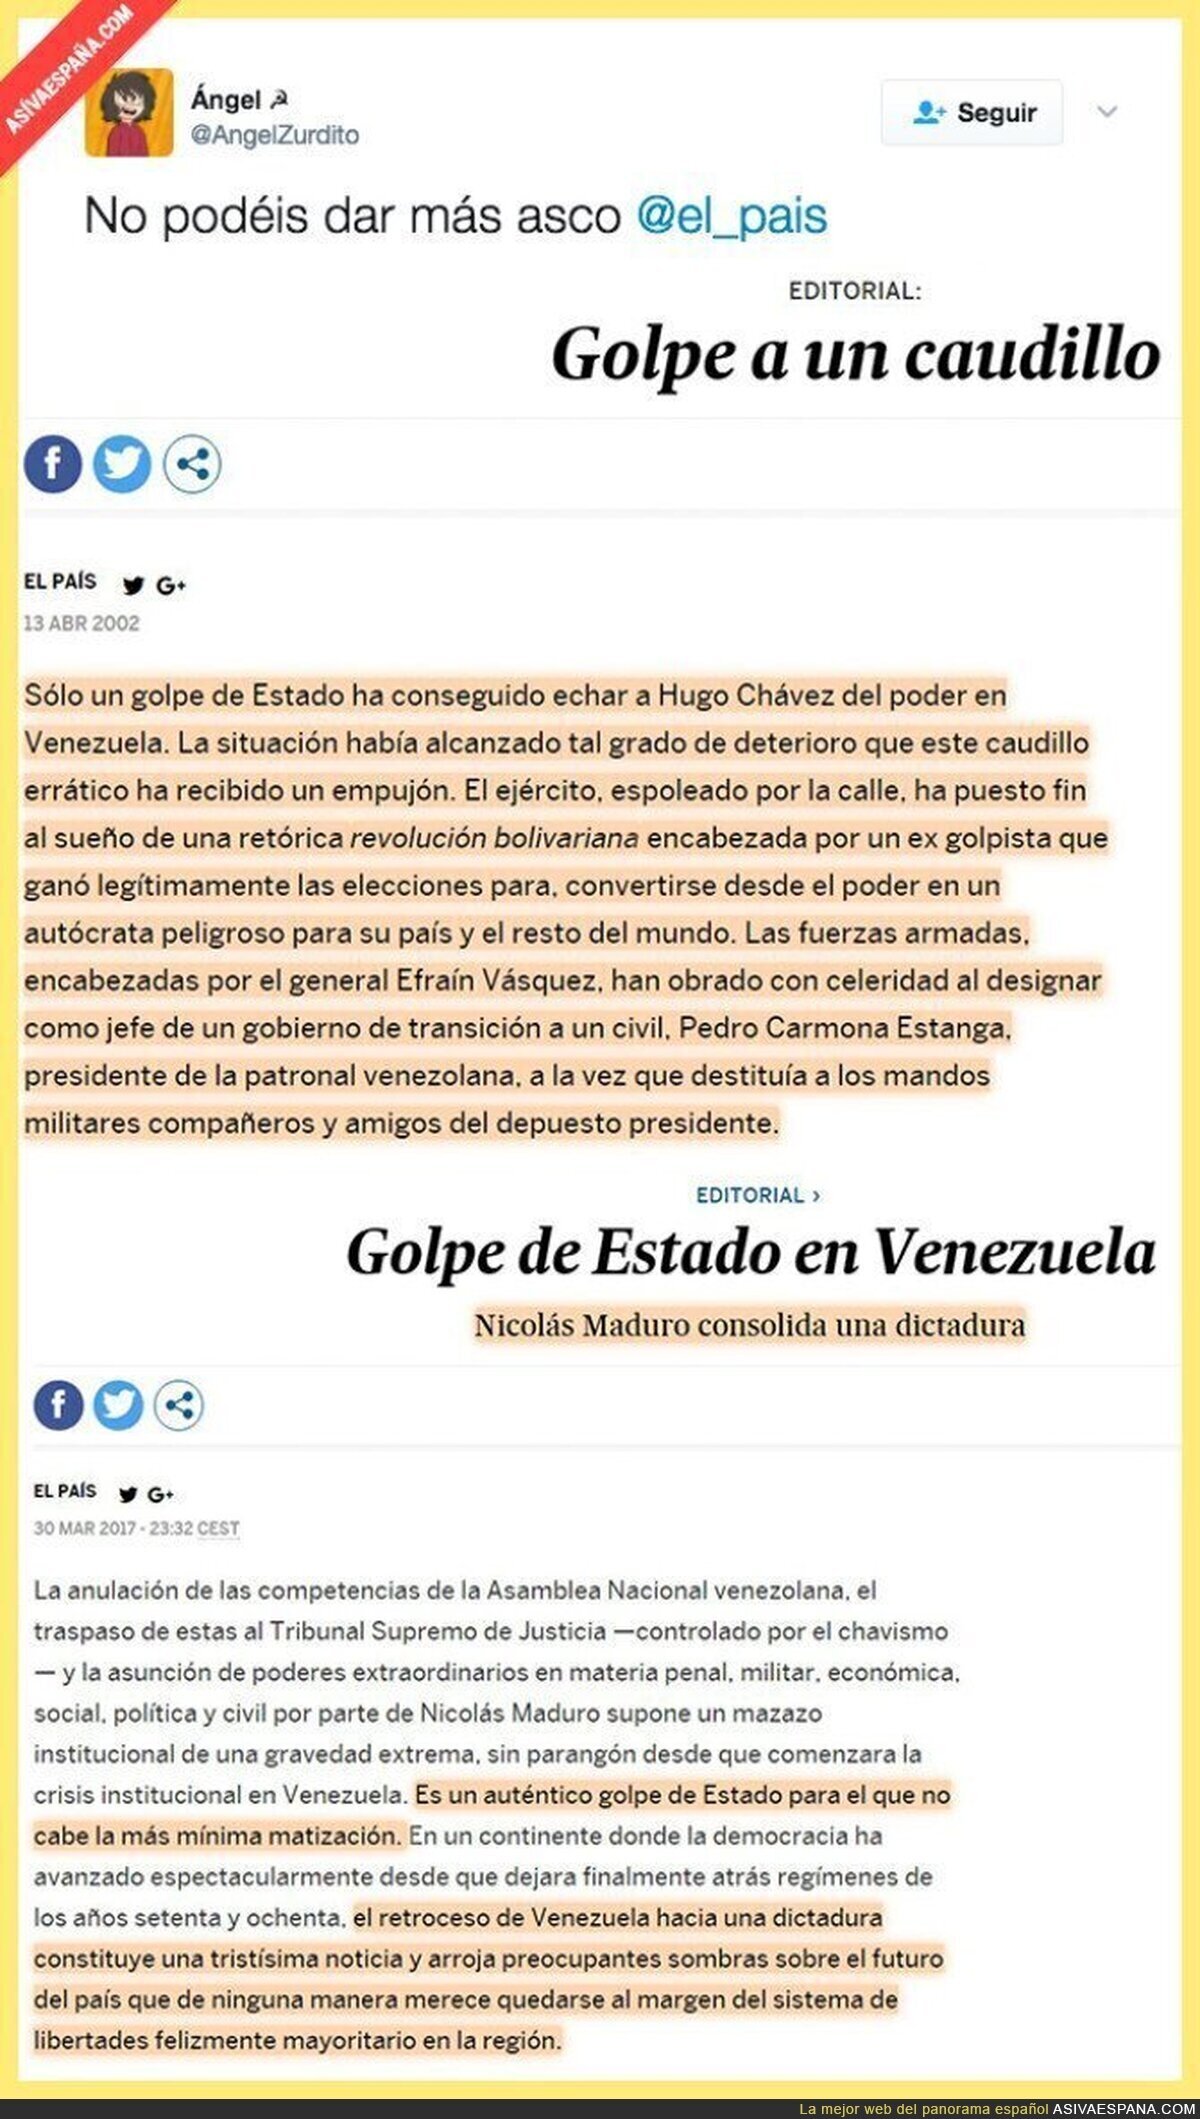 "El País" y las dictaduras en Venezuela - 2002 y 2017